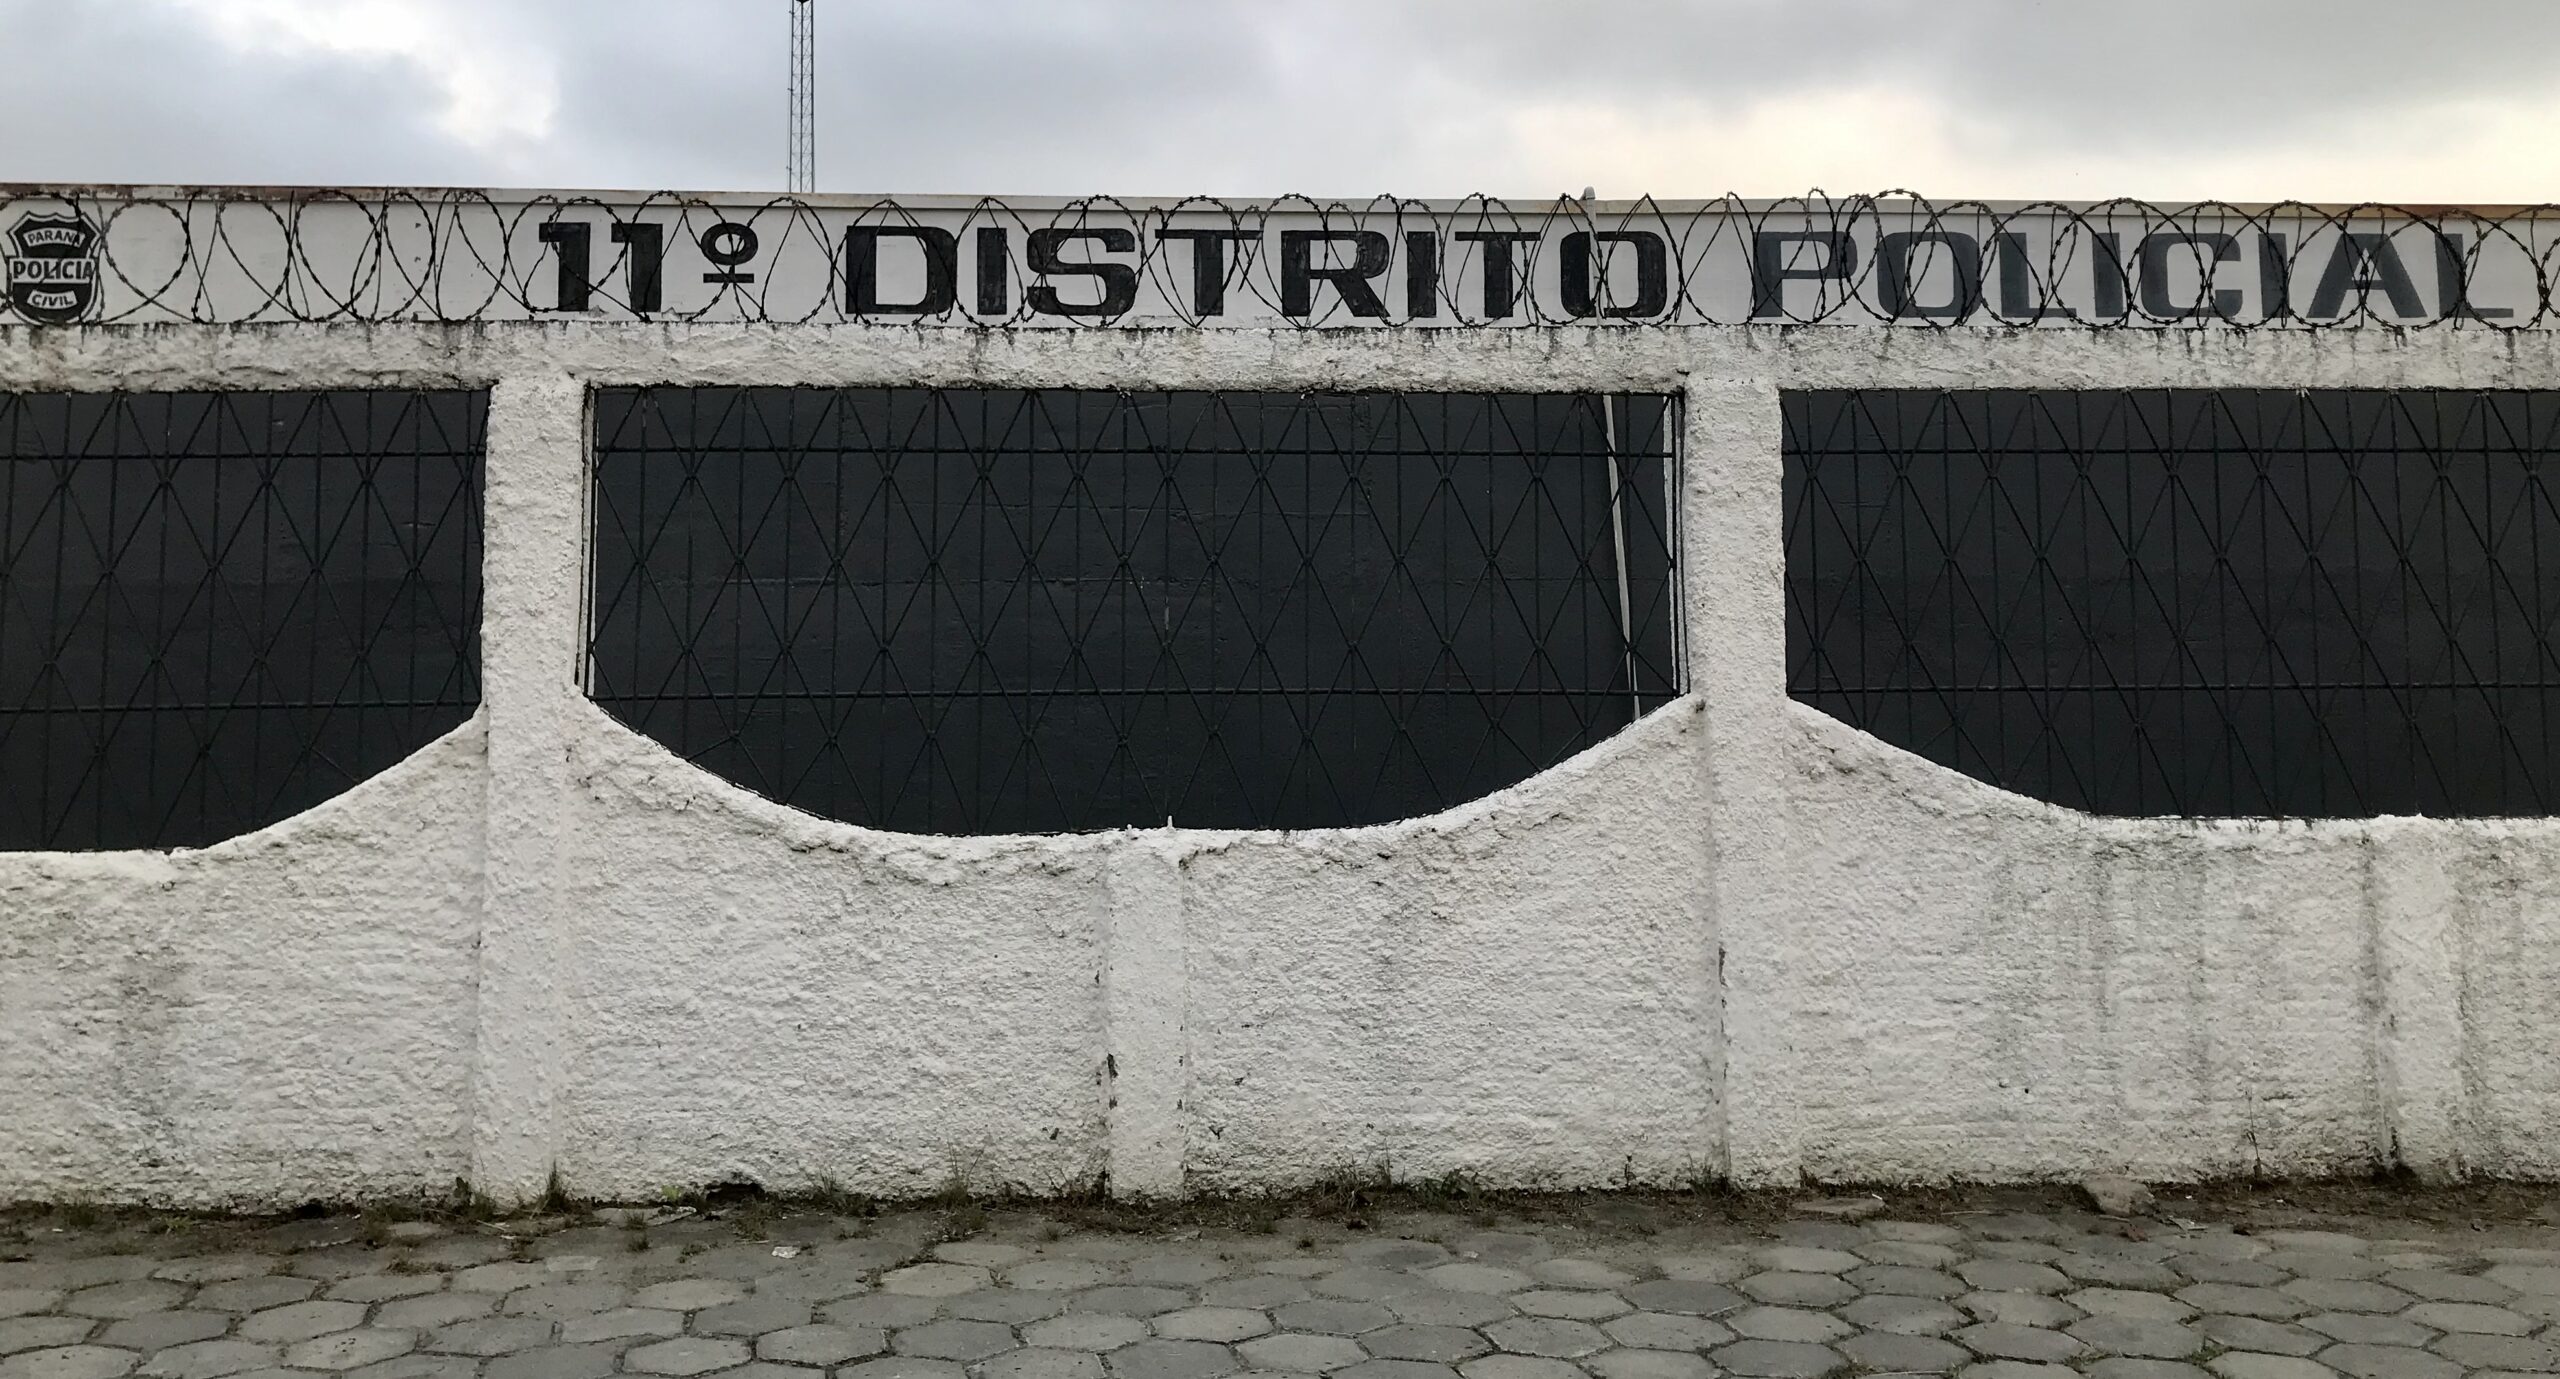 Superlotação nas unidades prisionais leva governo do Paraná a construir nova cadeia pública